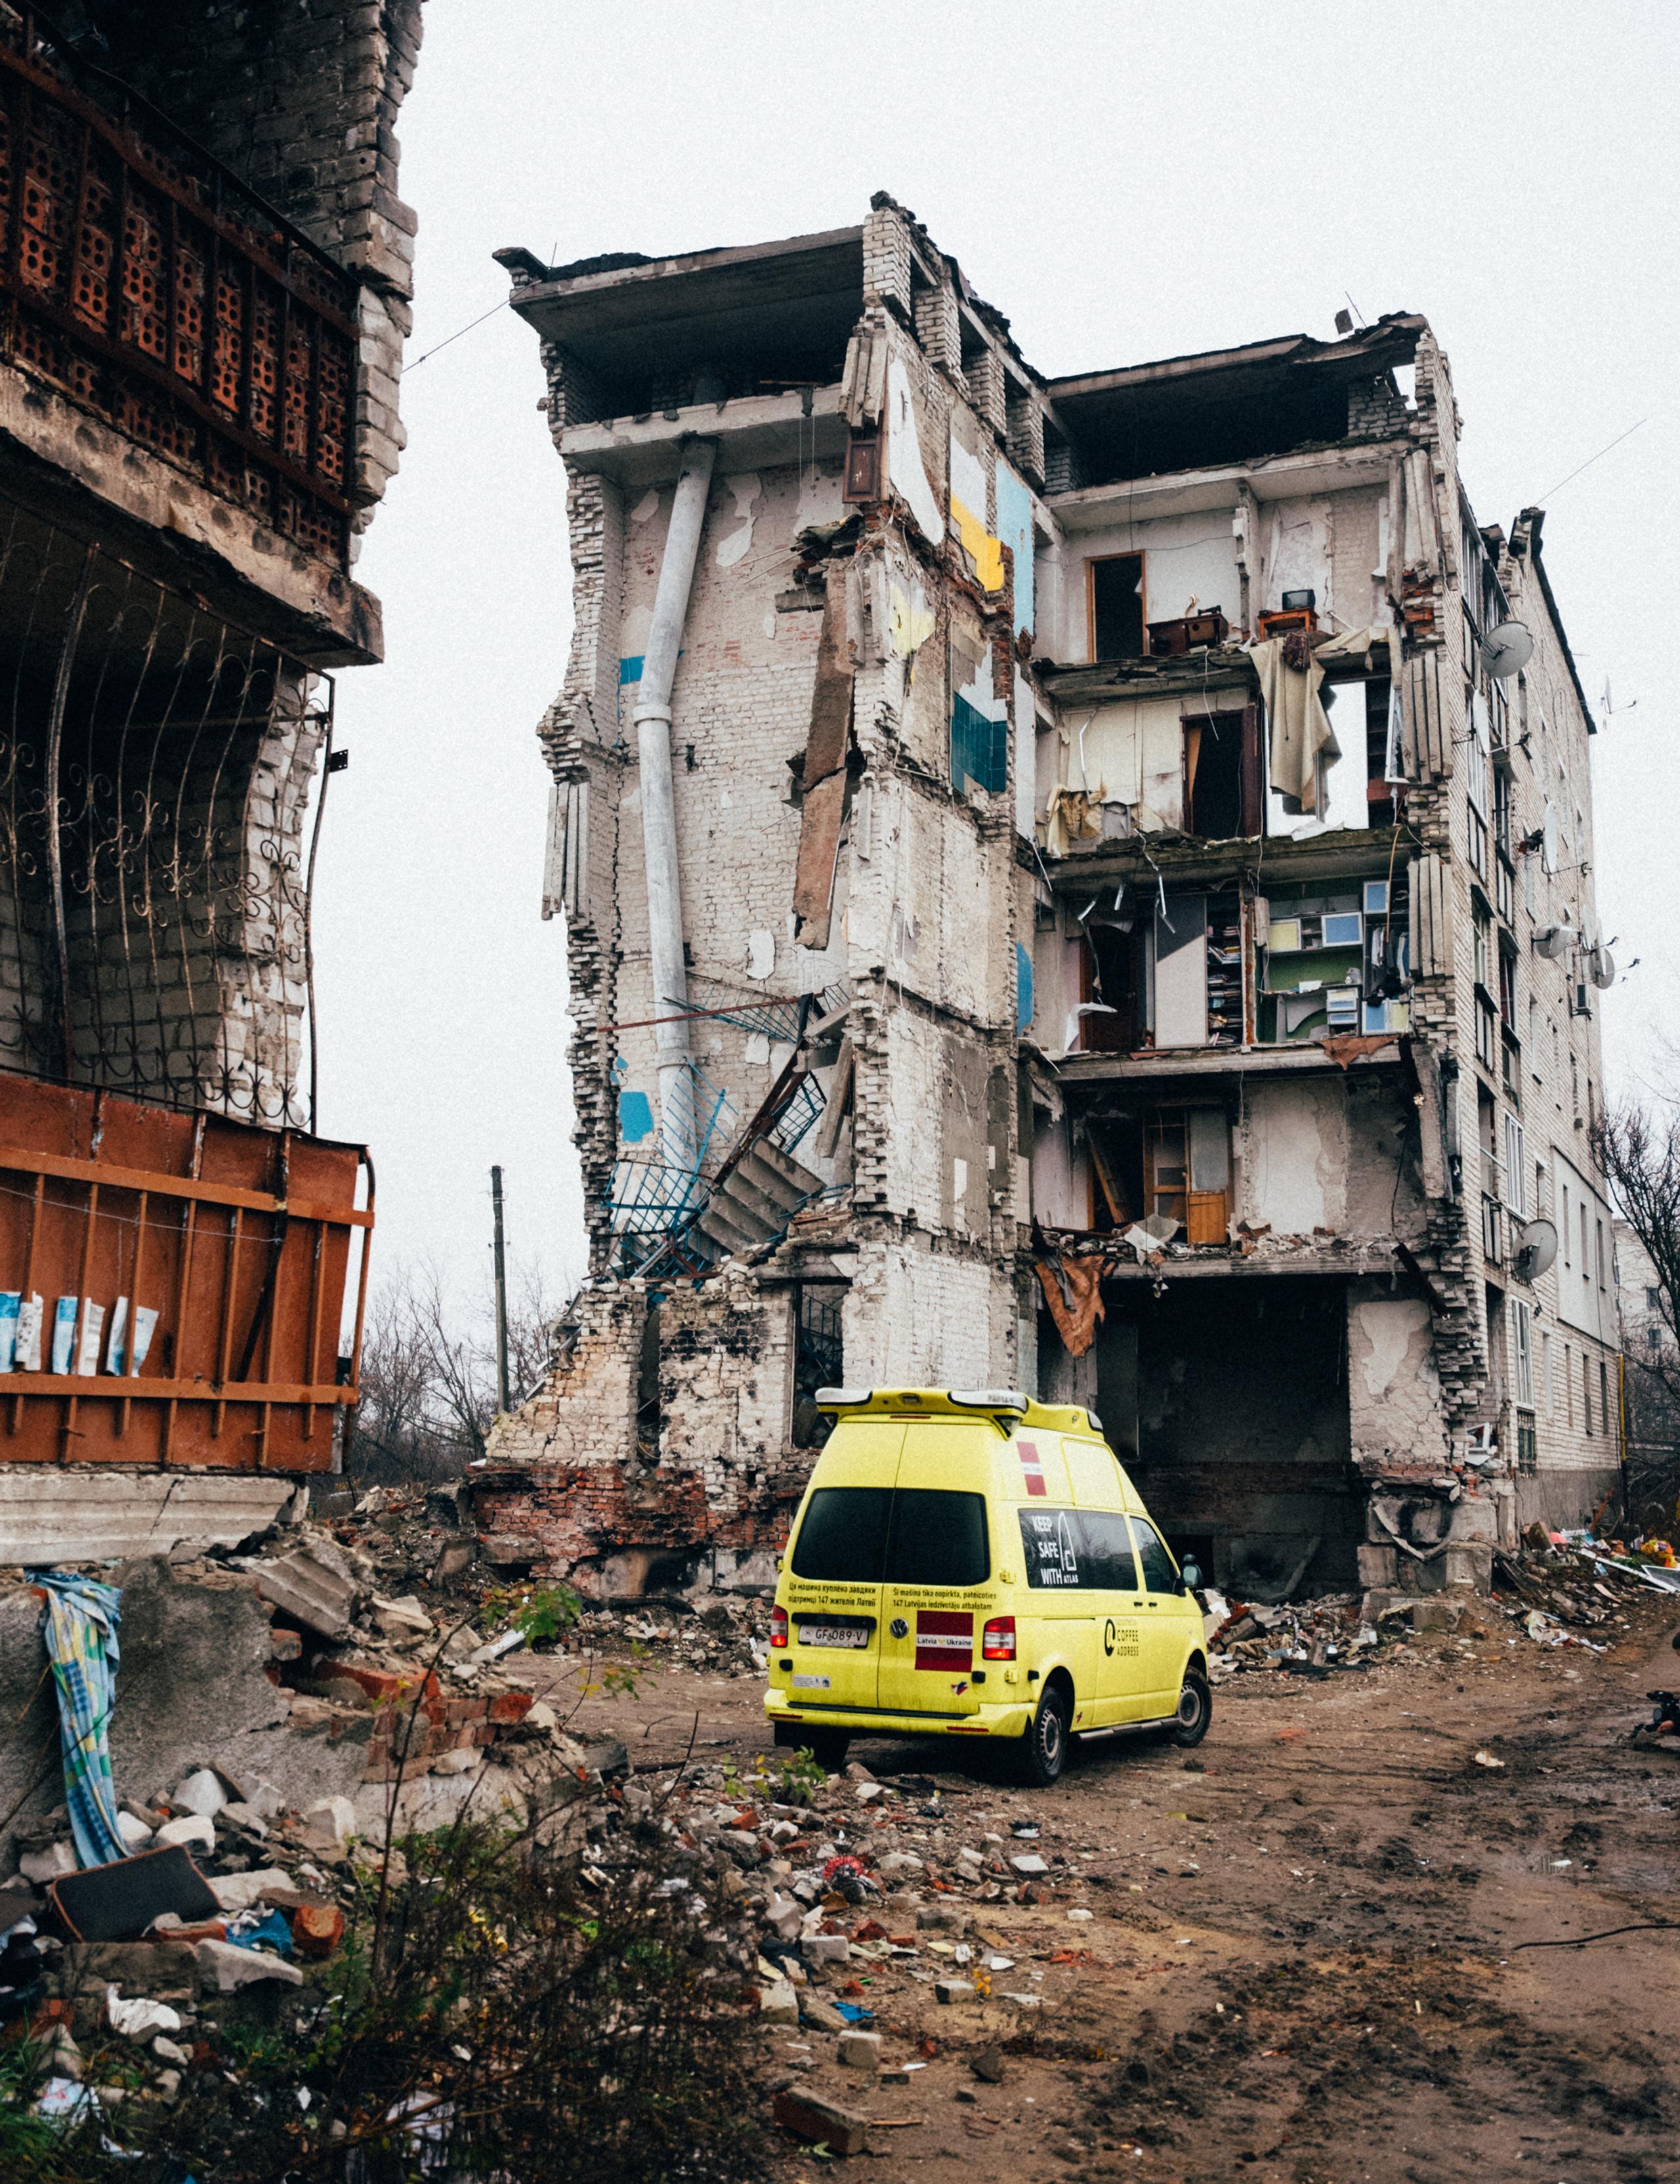 Yellow volunteer truck parked in front of destroyed building in Ukraine